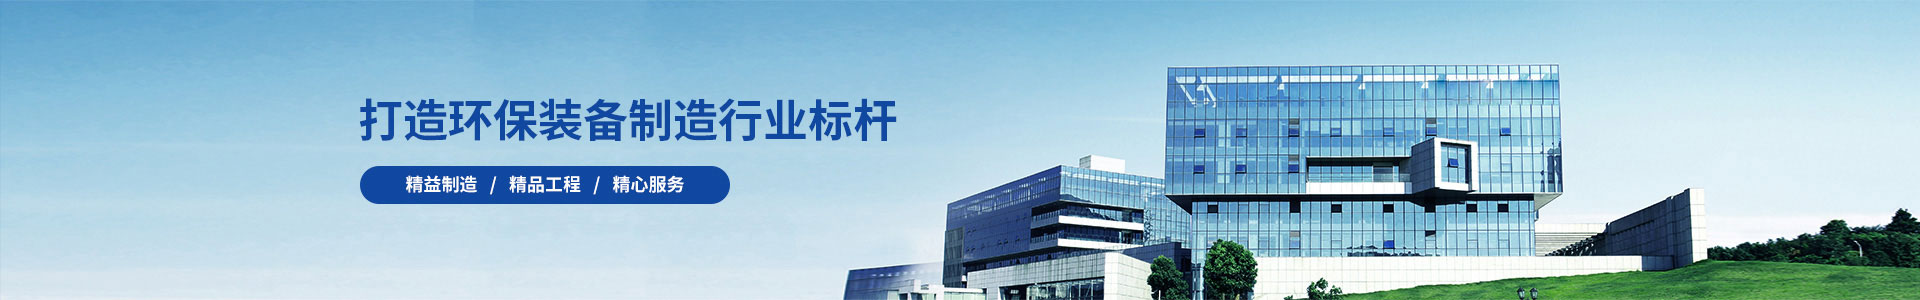 非标钢结构系列-广州锦如广告有限公司